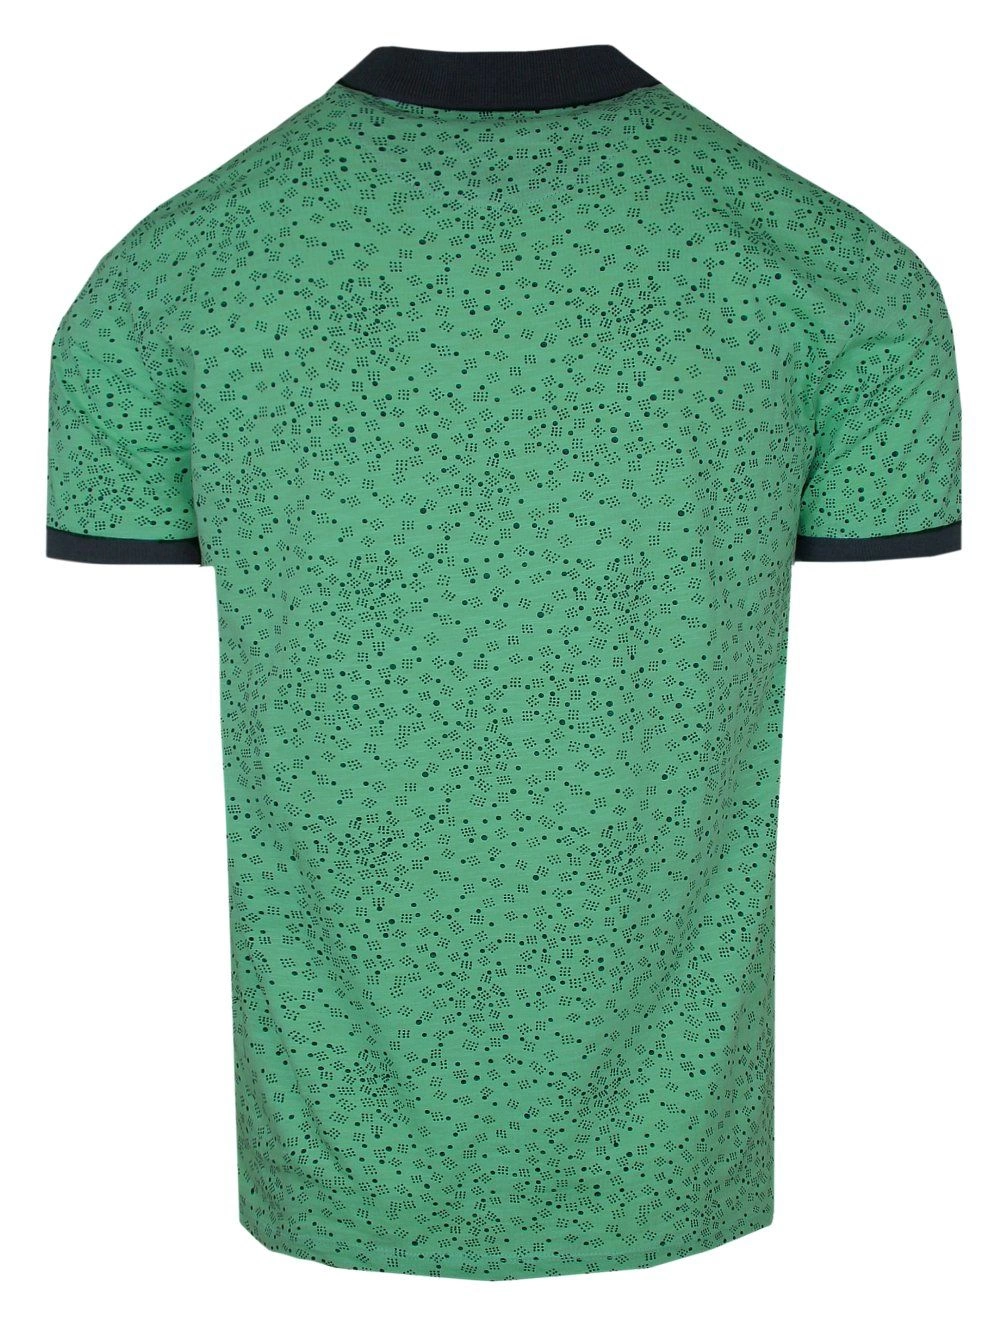 Koszulka POLO, Zielona, Wzór Geometryczny, Krótki Rękaw, Męska, z Nadrukiem